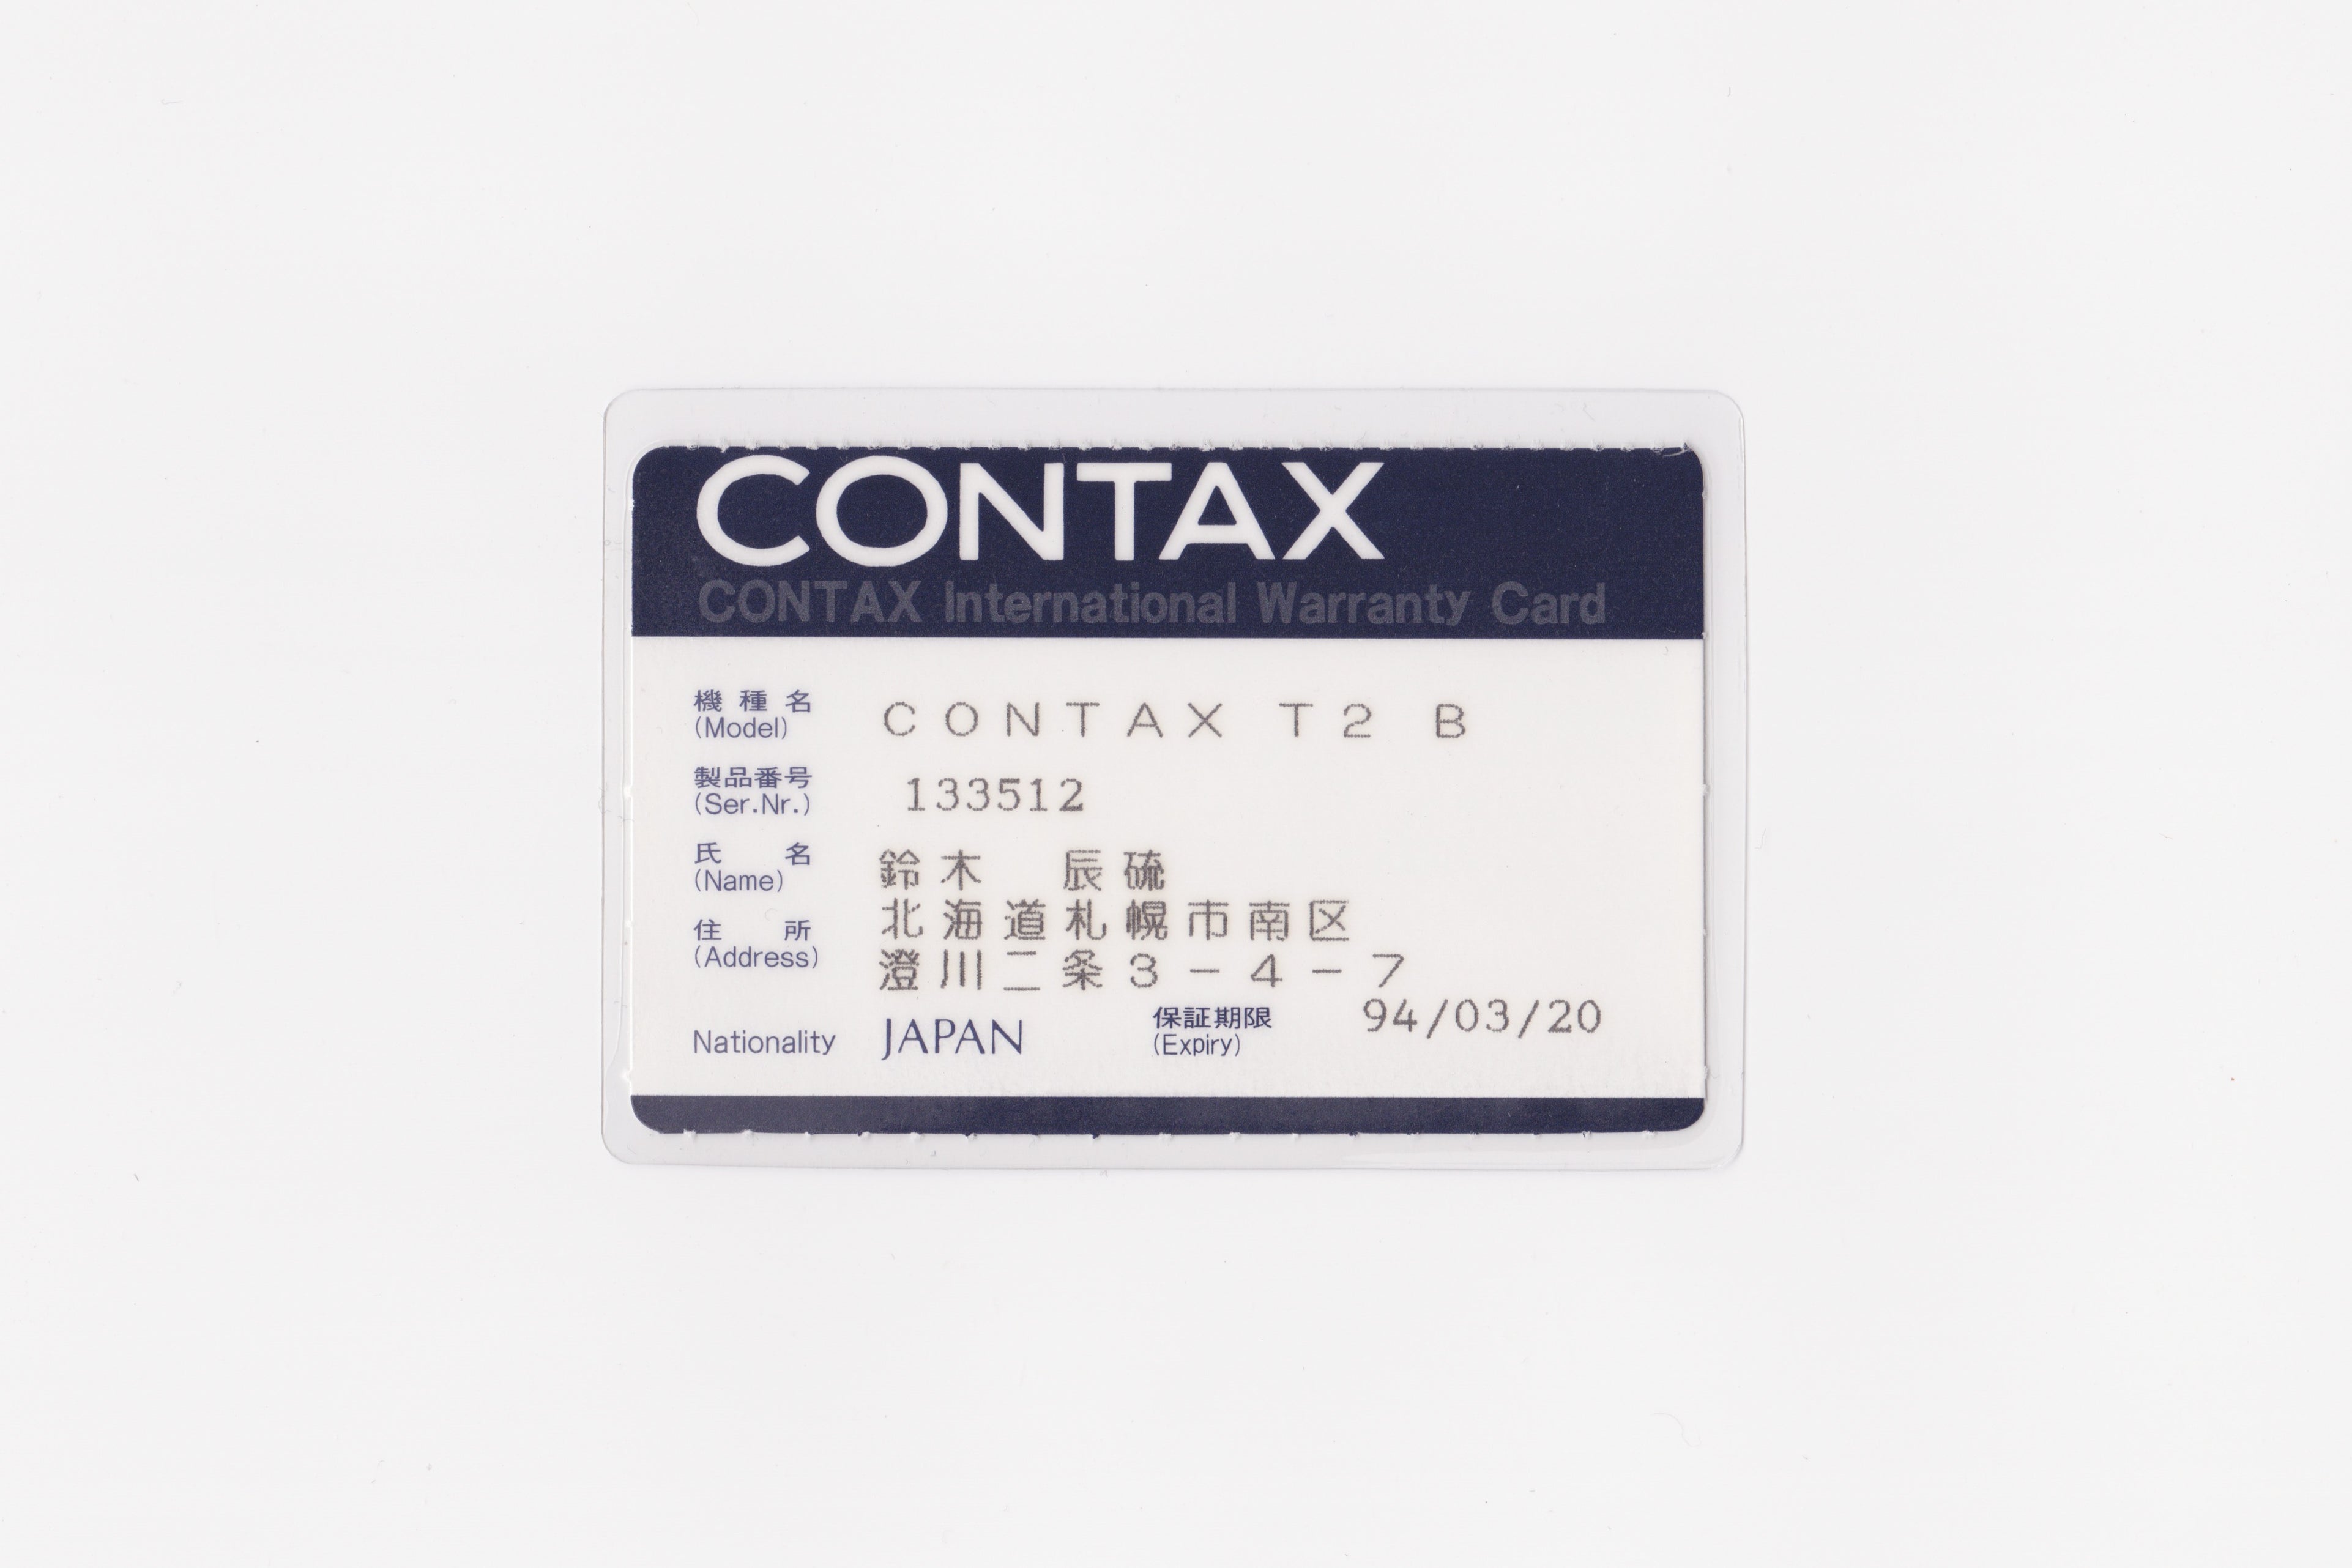 Contax T2 'Titanium Black' (Boxed)